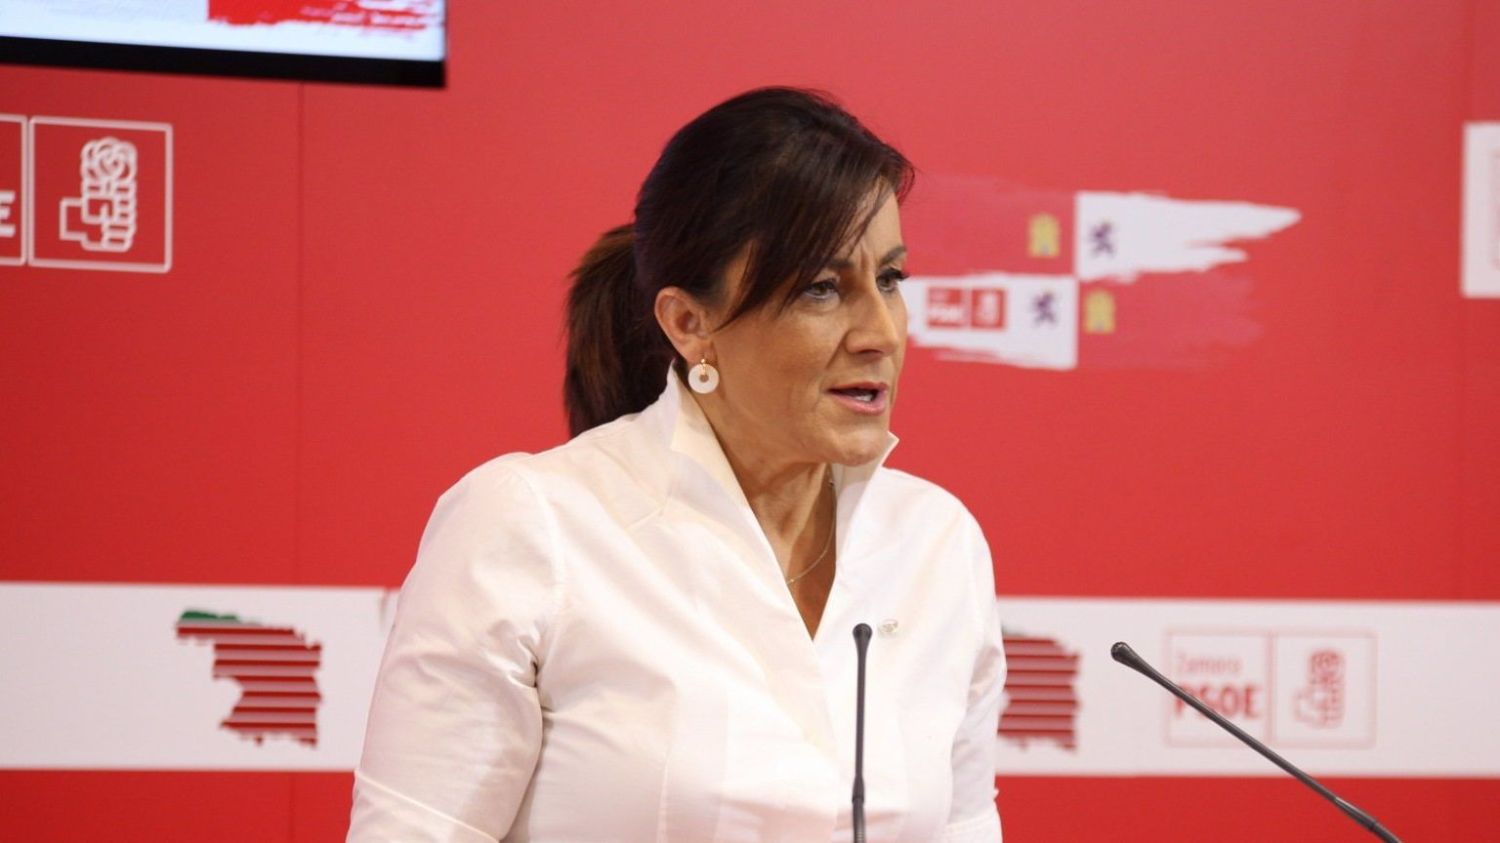 Ana Sánchez durante la rueda de prensa en Zamora.